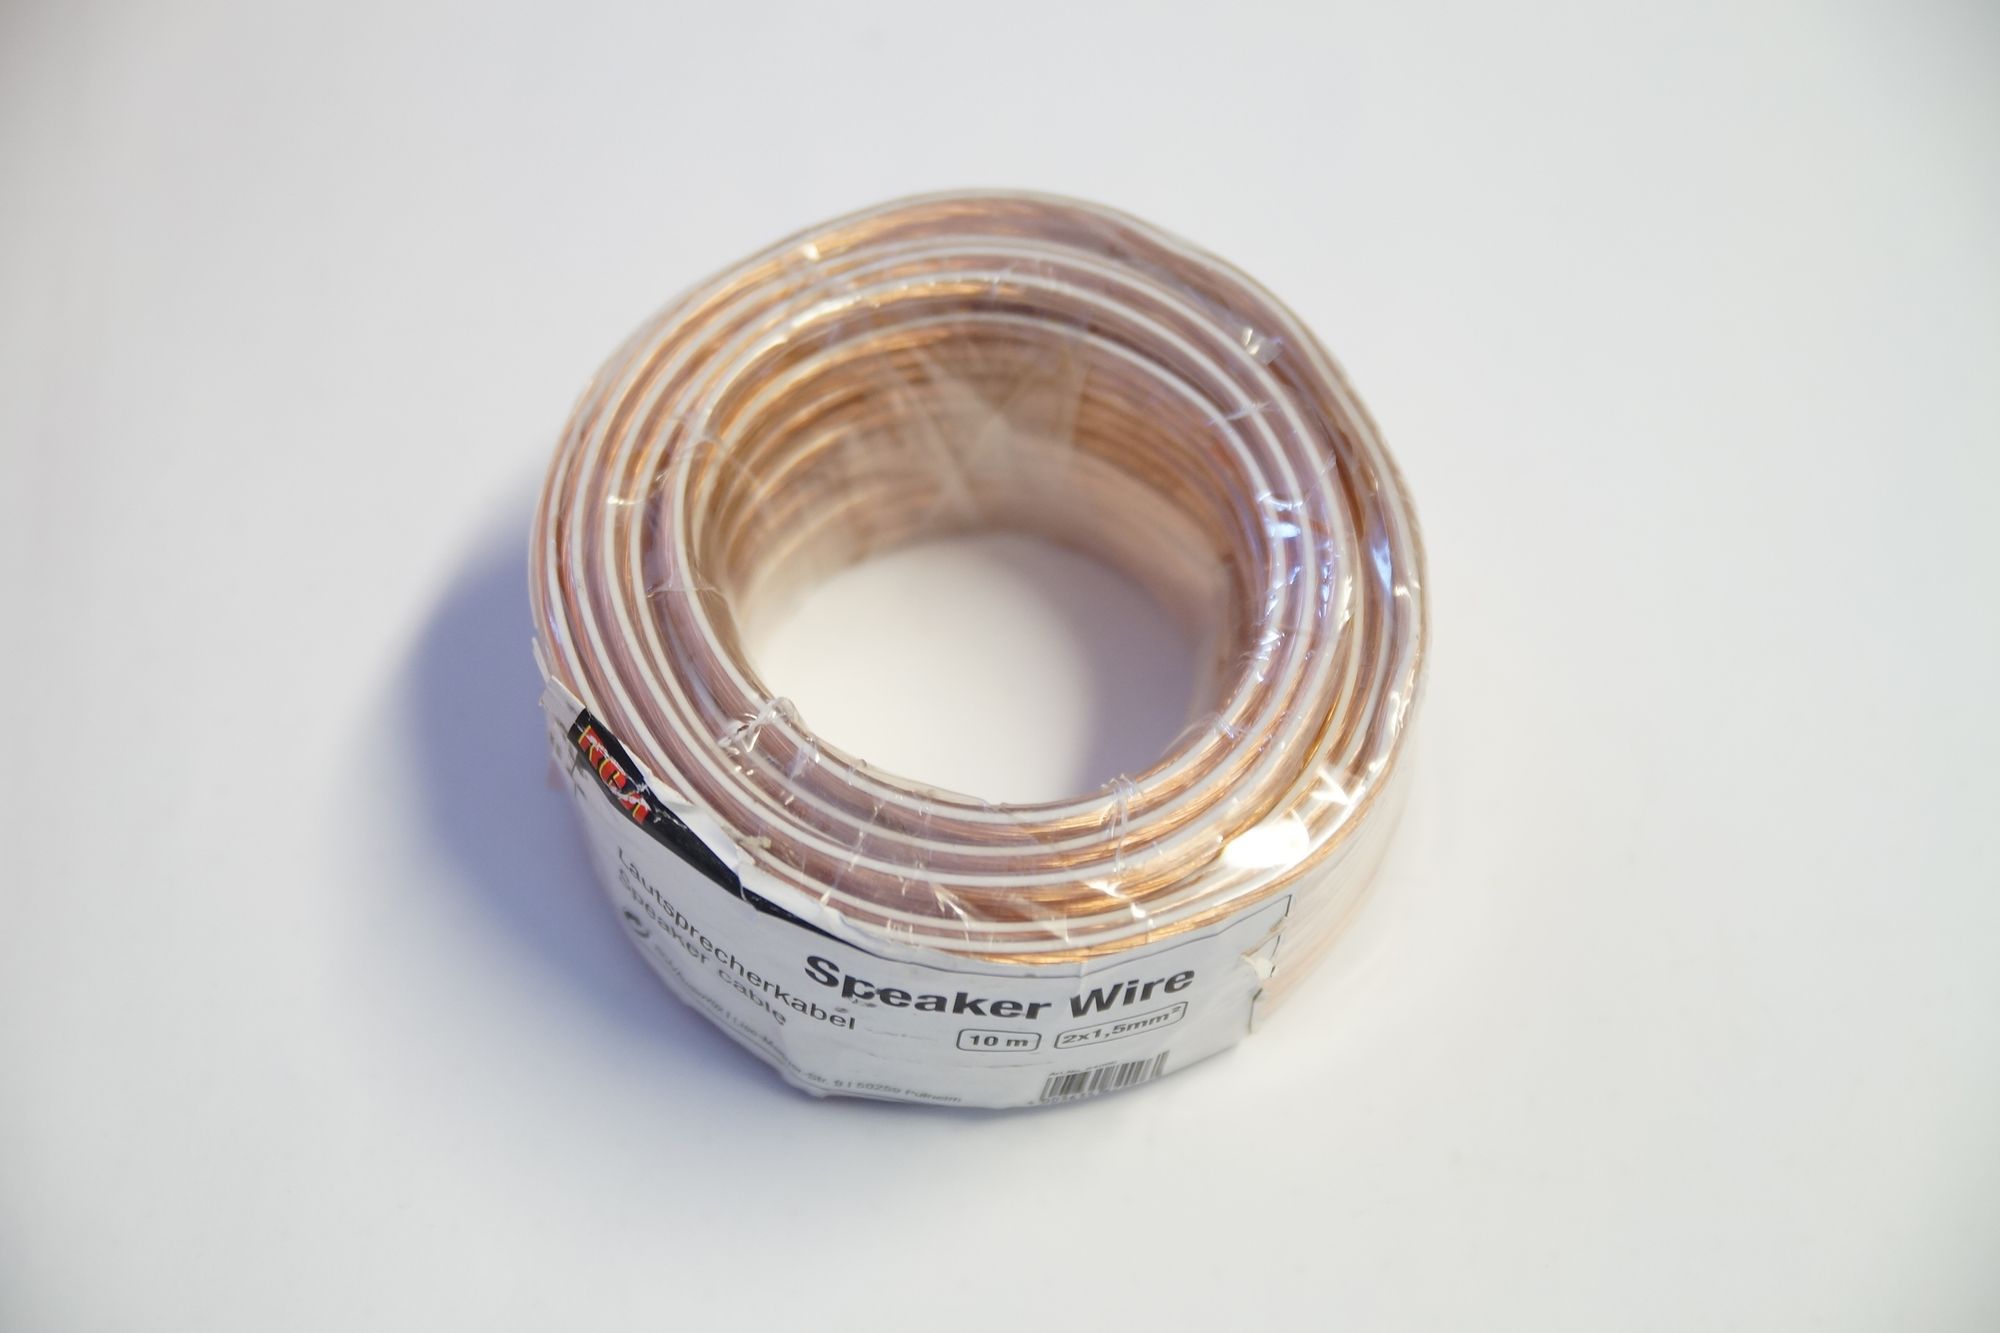 Audiovox Lautsprecherkabel 2 x 1,5 mm² transparent 10 Meter Spule